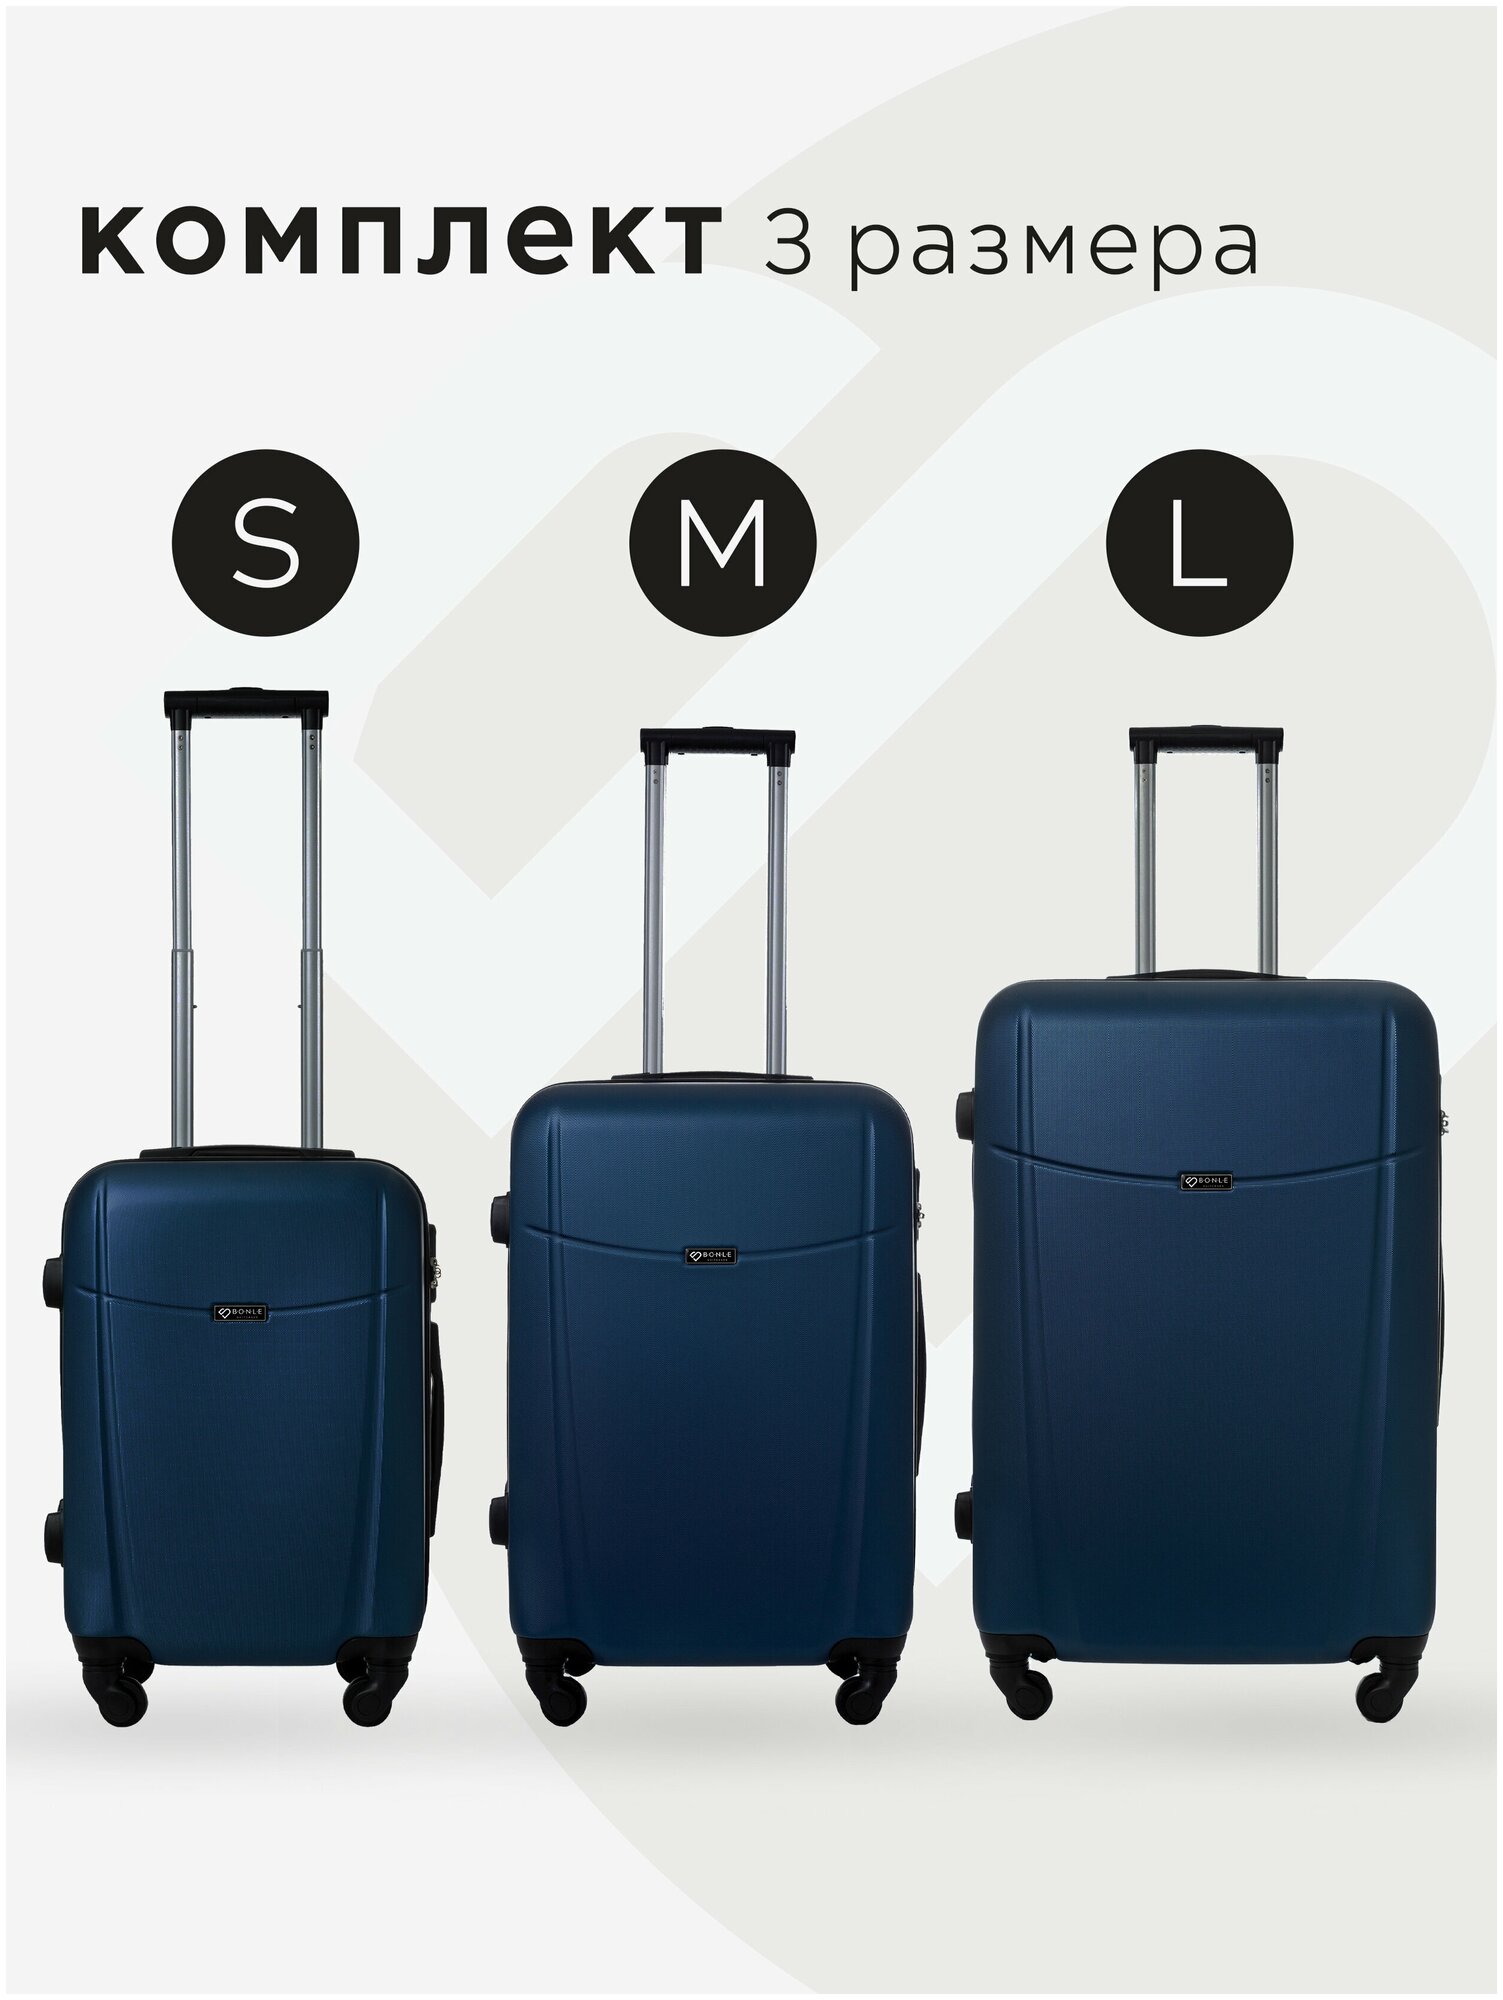 Комплект чемоданов 3шт, Тасмания, Темно-синий, размер L,M,S маленький, средний, большой, ручная кладь,дорожный, не тканевый